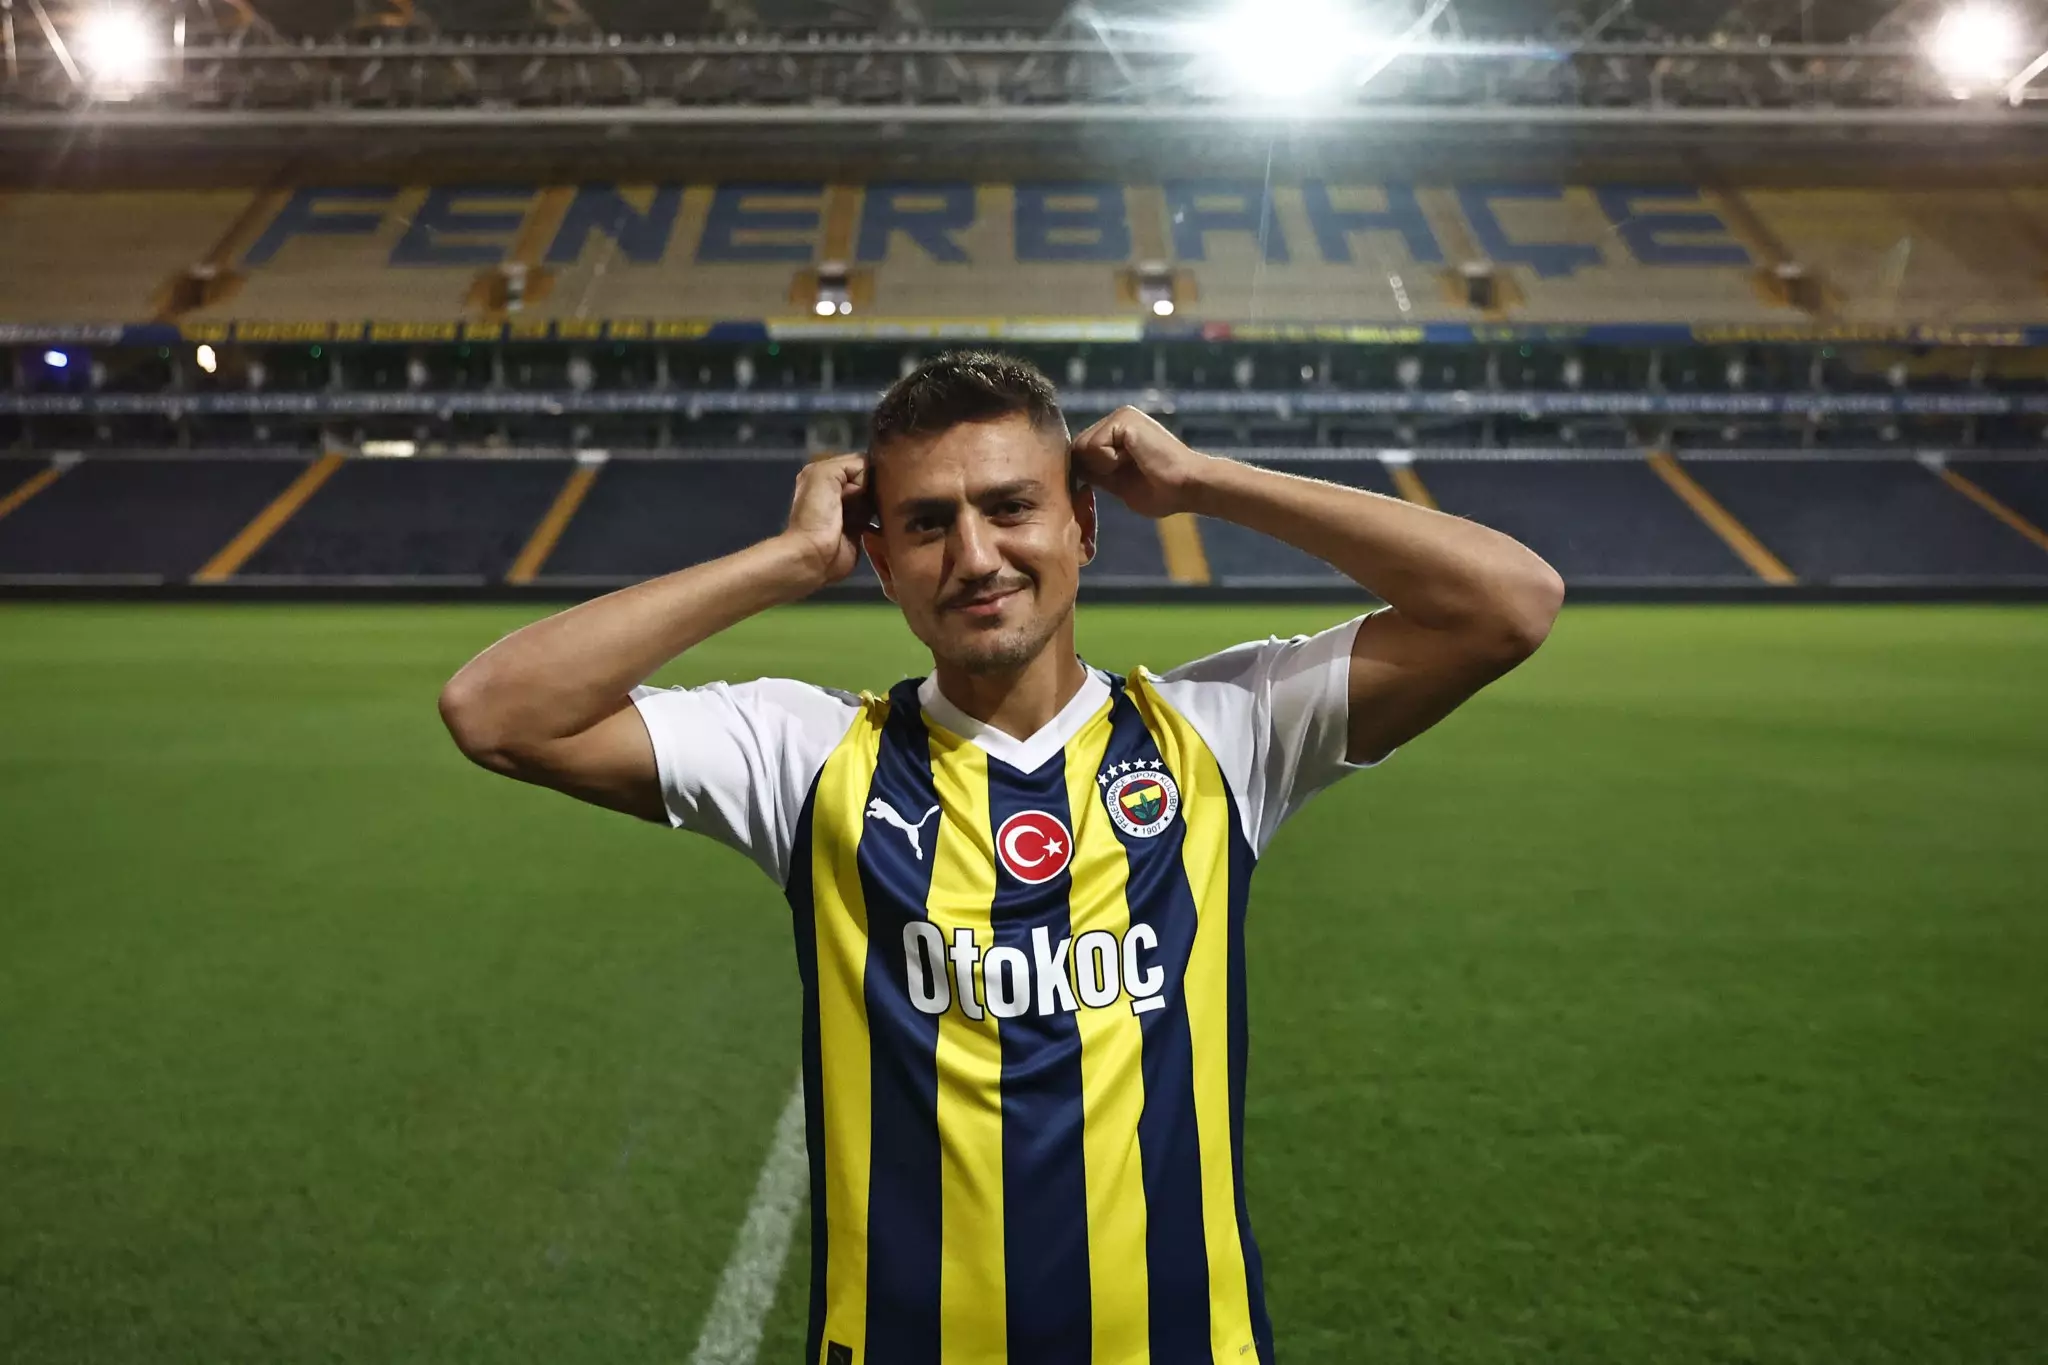 "Fənərbağça" klubu ən bahalı transferini reallaşdırdı